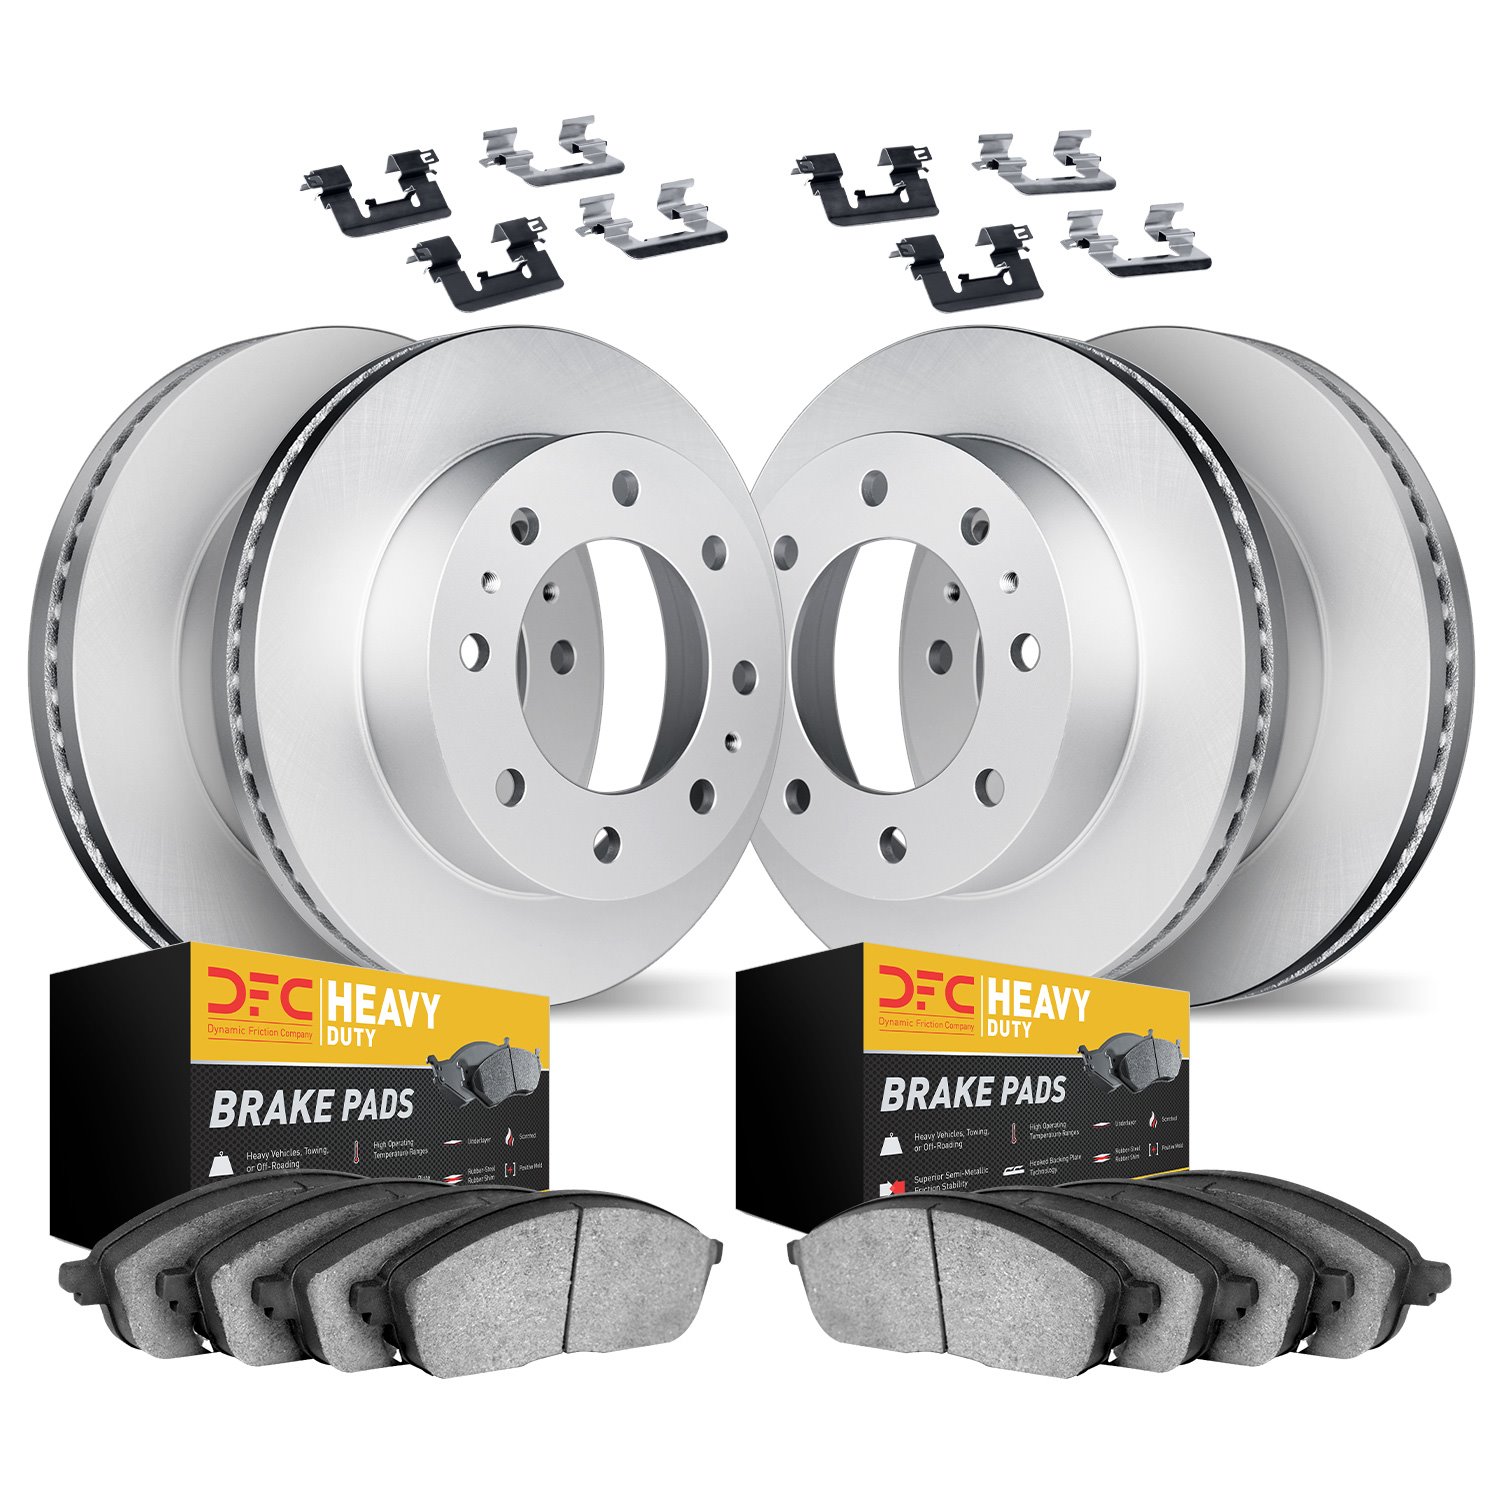 4214-40030 Geospec Brake Rotors w/Heavy-Duty Brake Pads & Hardware, 2009-2018 Mopar, Position: Front and Rear